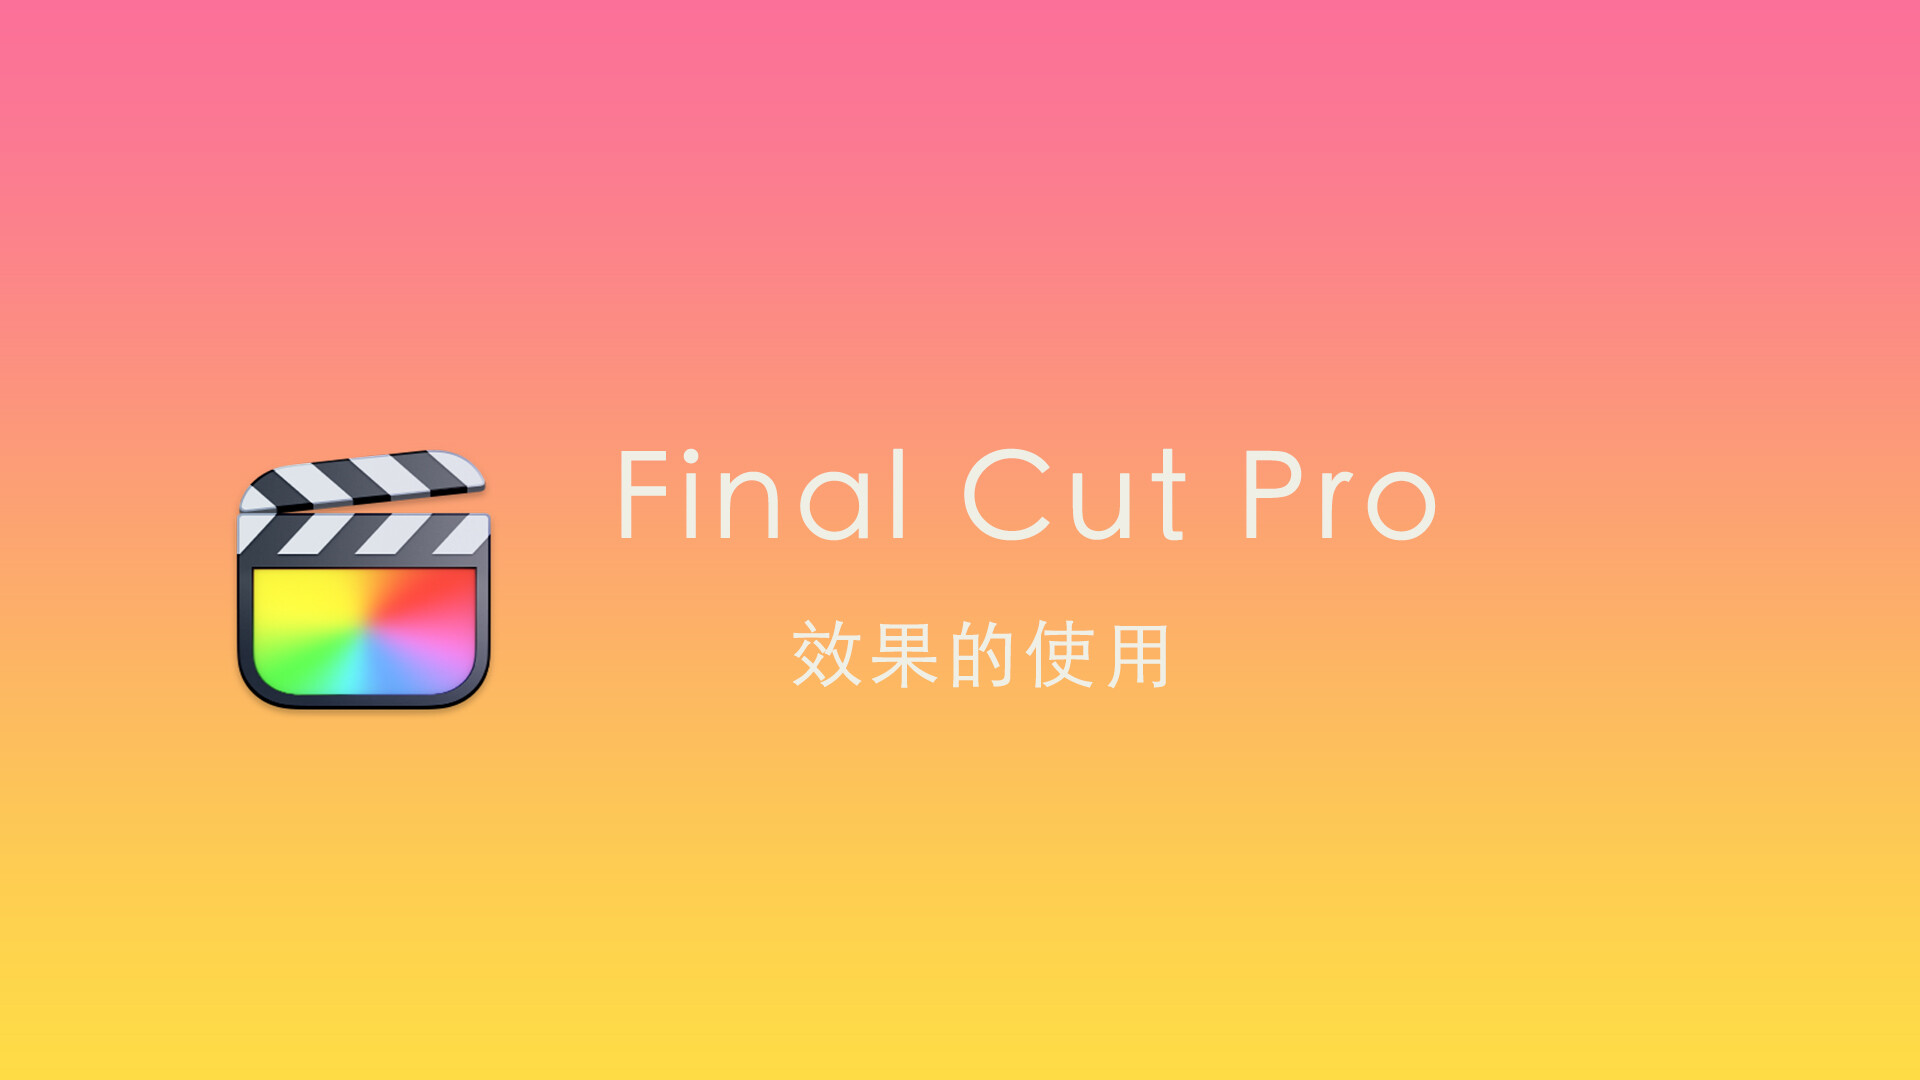 Final Cut Pro中文新手教程 (25) 效果的使用